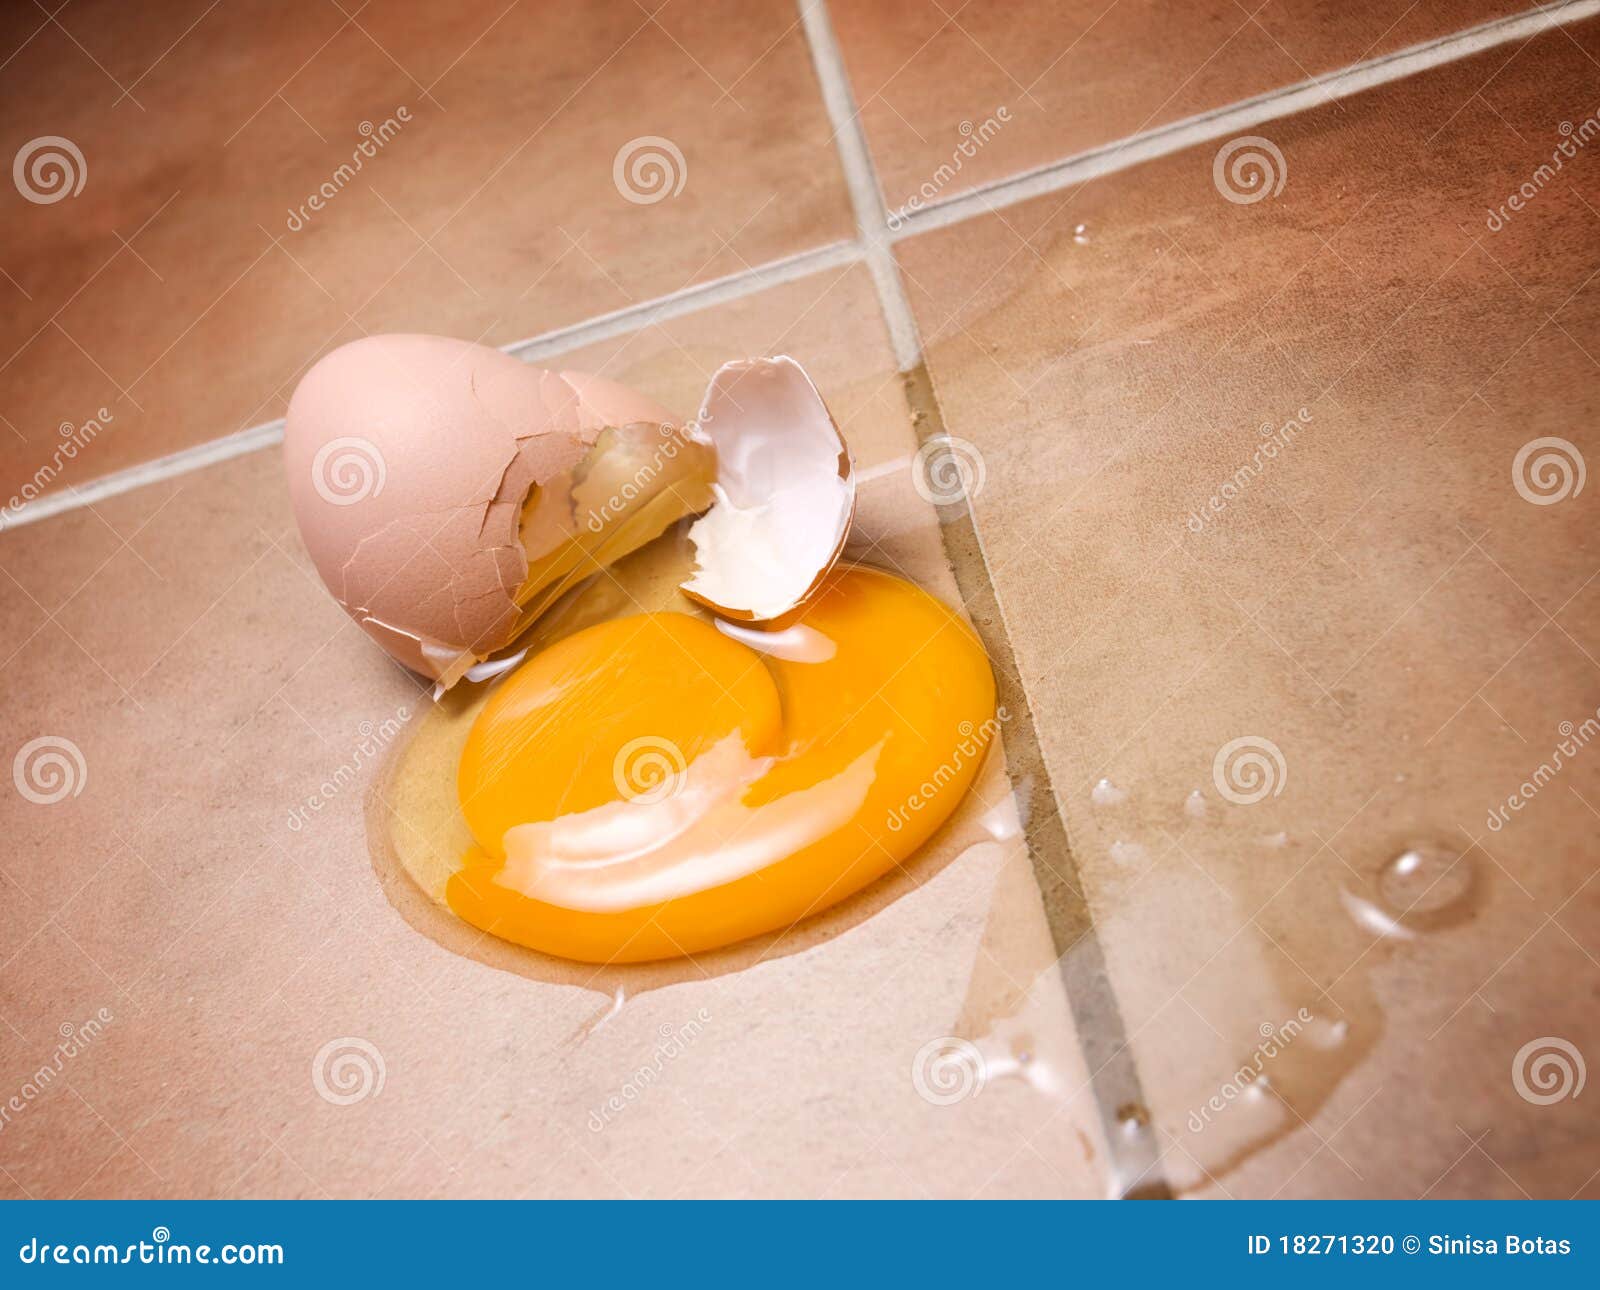 Limpia con huevo como interpretar